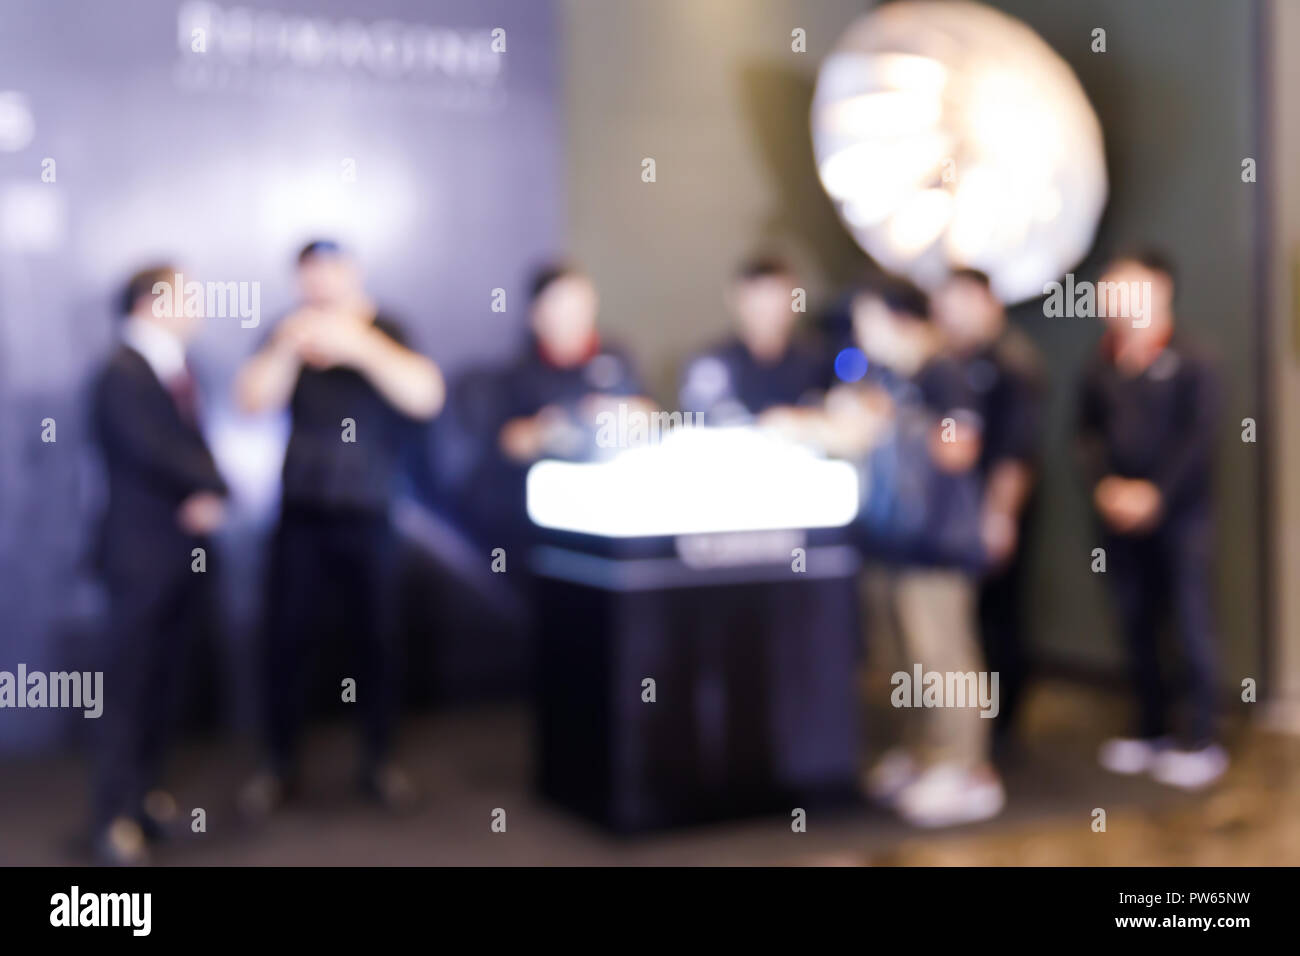 Abstract blur Menschen in Pressekonferenz Ereignis oder Corporate messe Seminar Tagung party Stockfoto